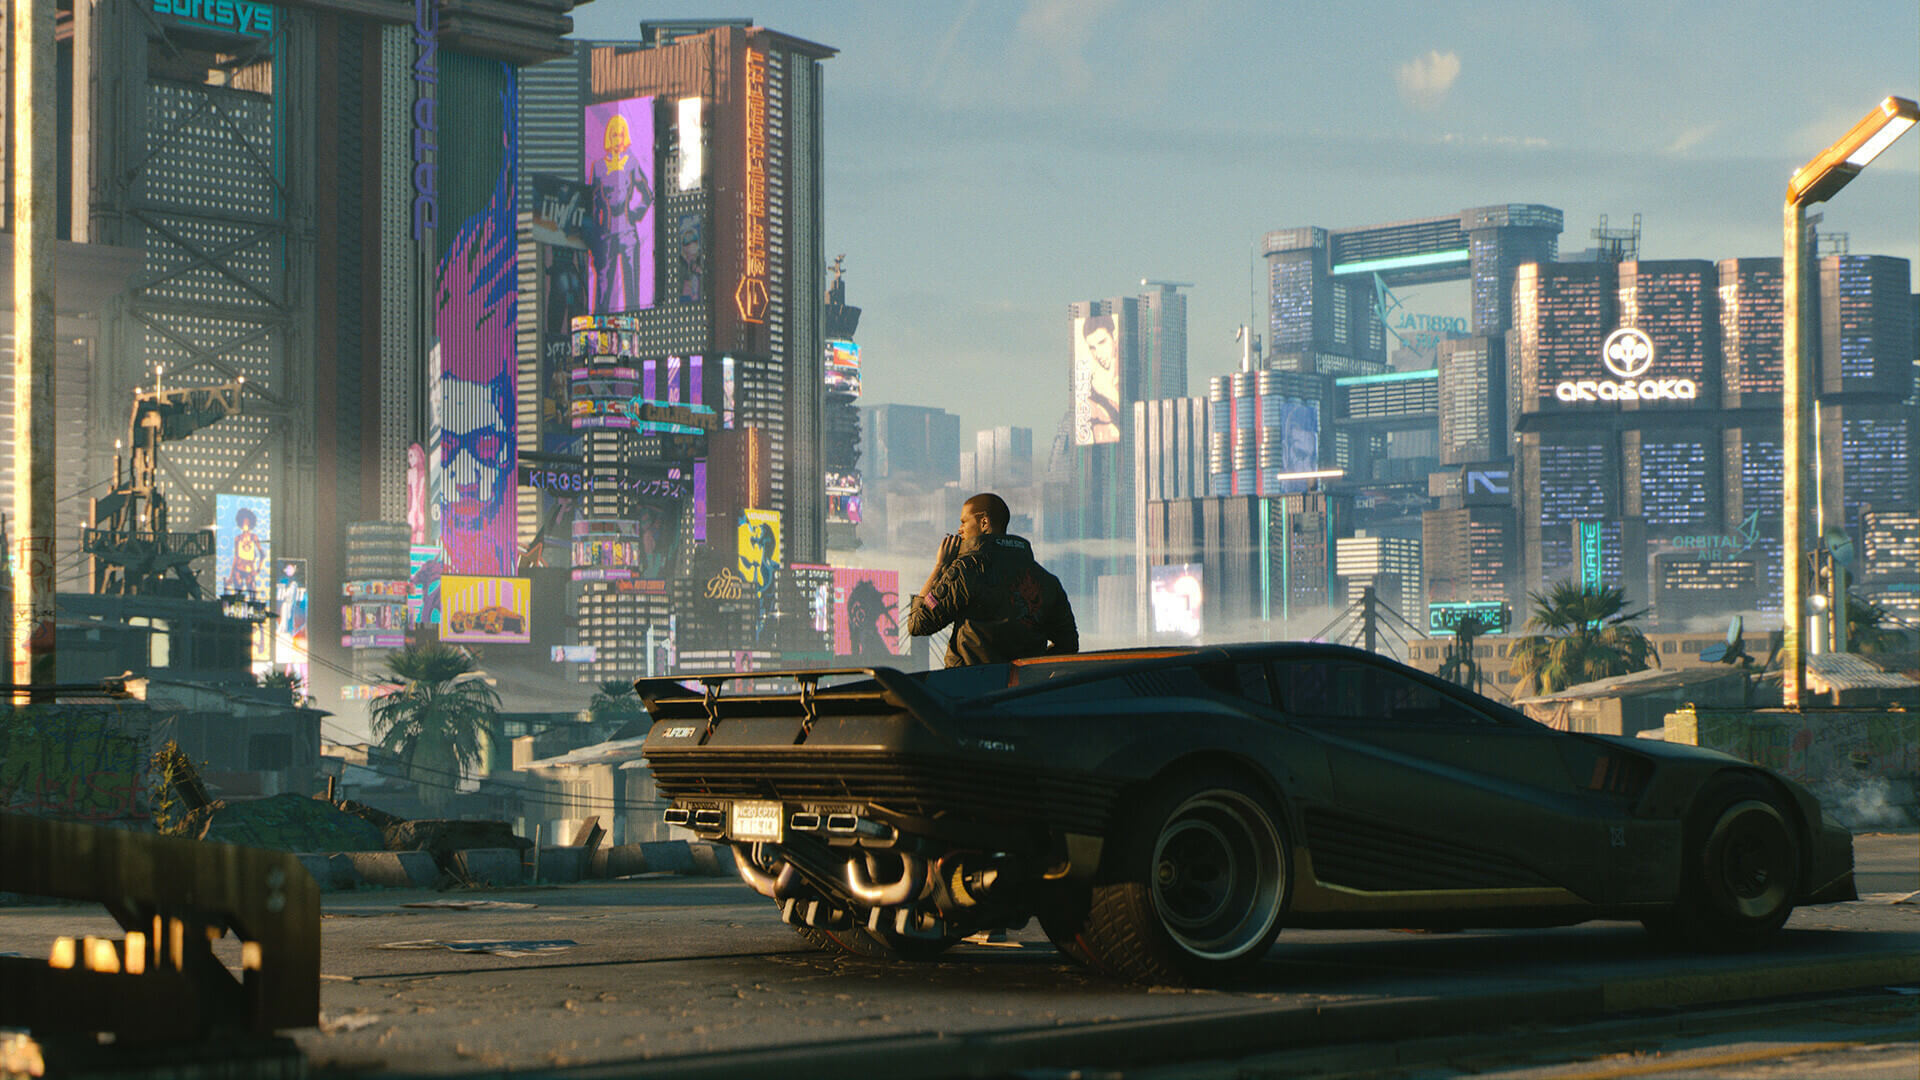 V sitting on his car in Cyberpunk 2077